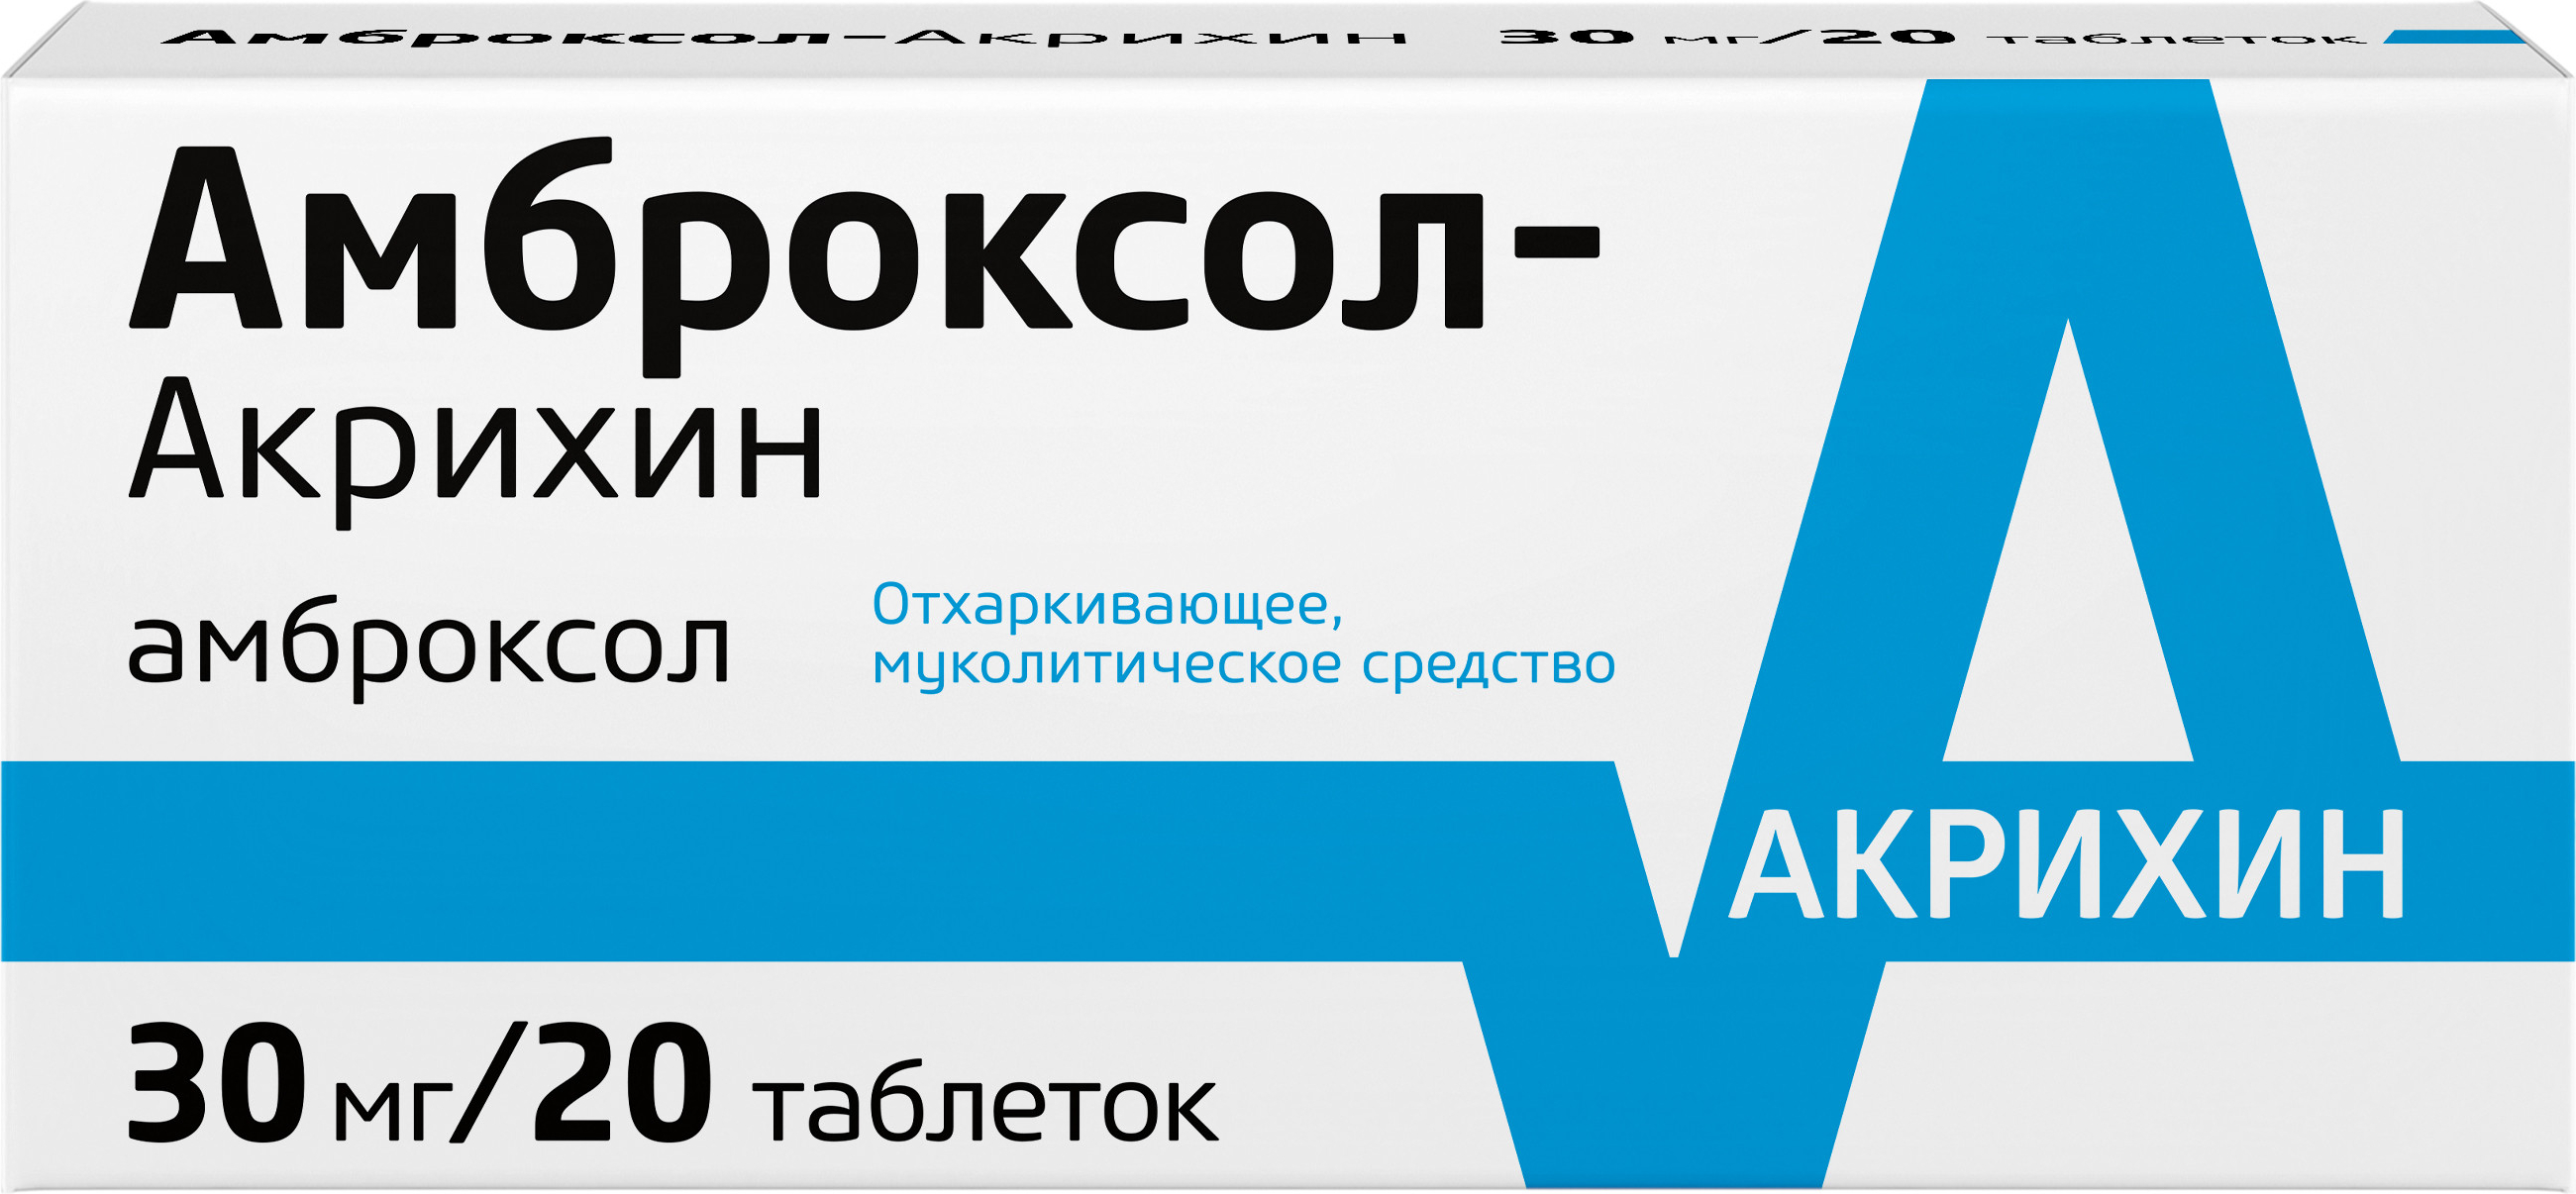 Амброксол-Акрихин, таблетки 30 мг, 20 шт. амброксол таблетки 30 мг 50 шт